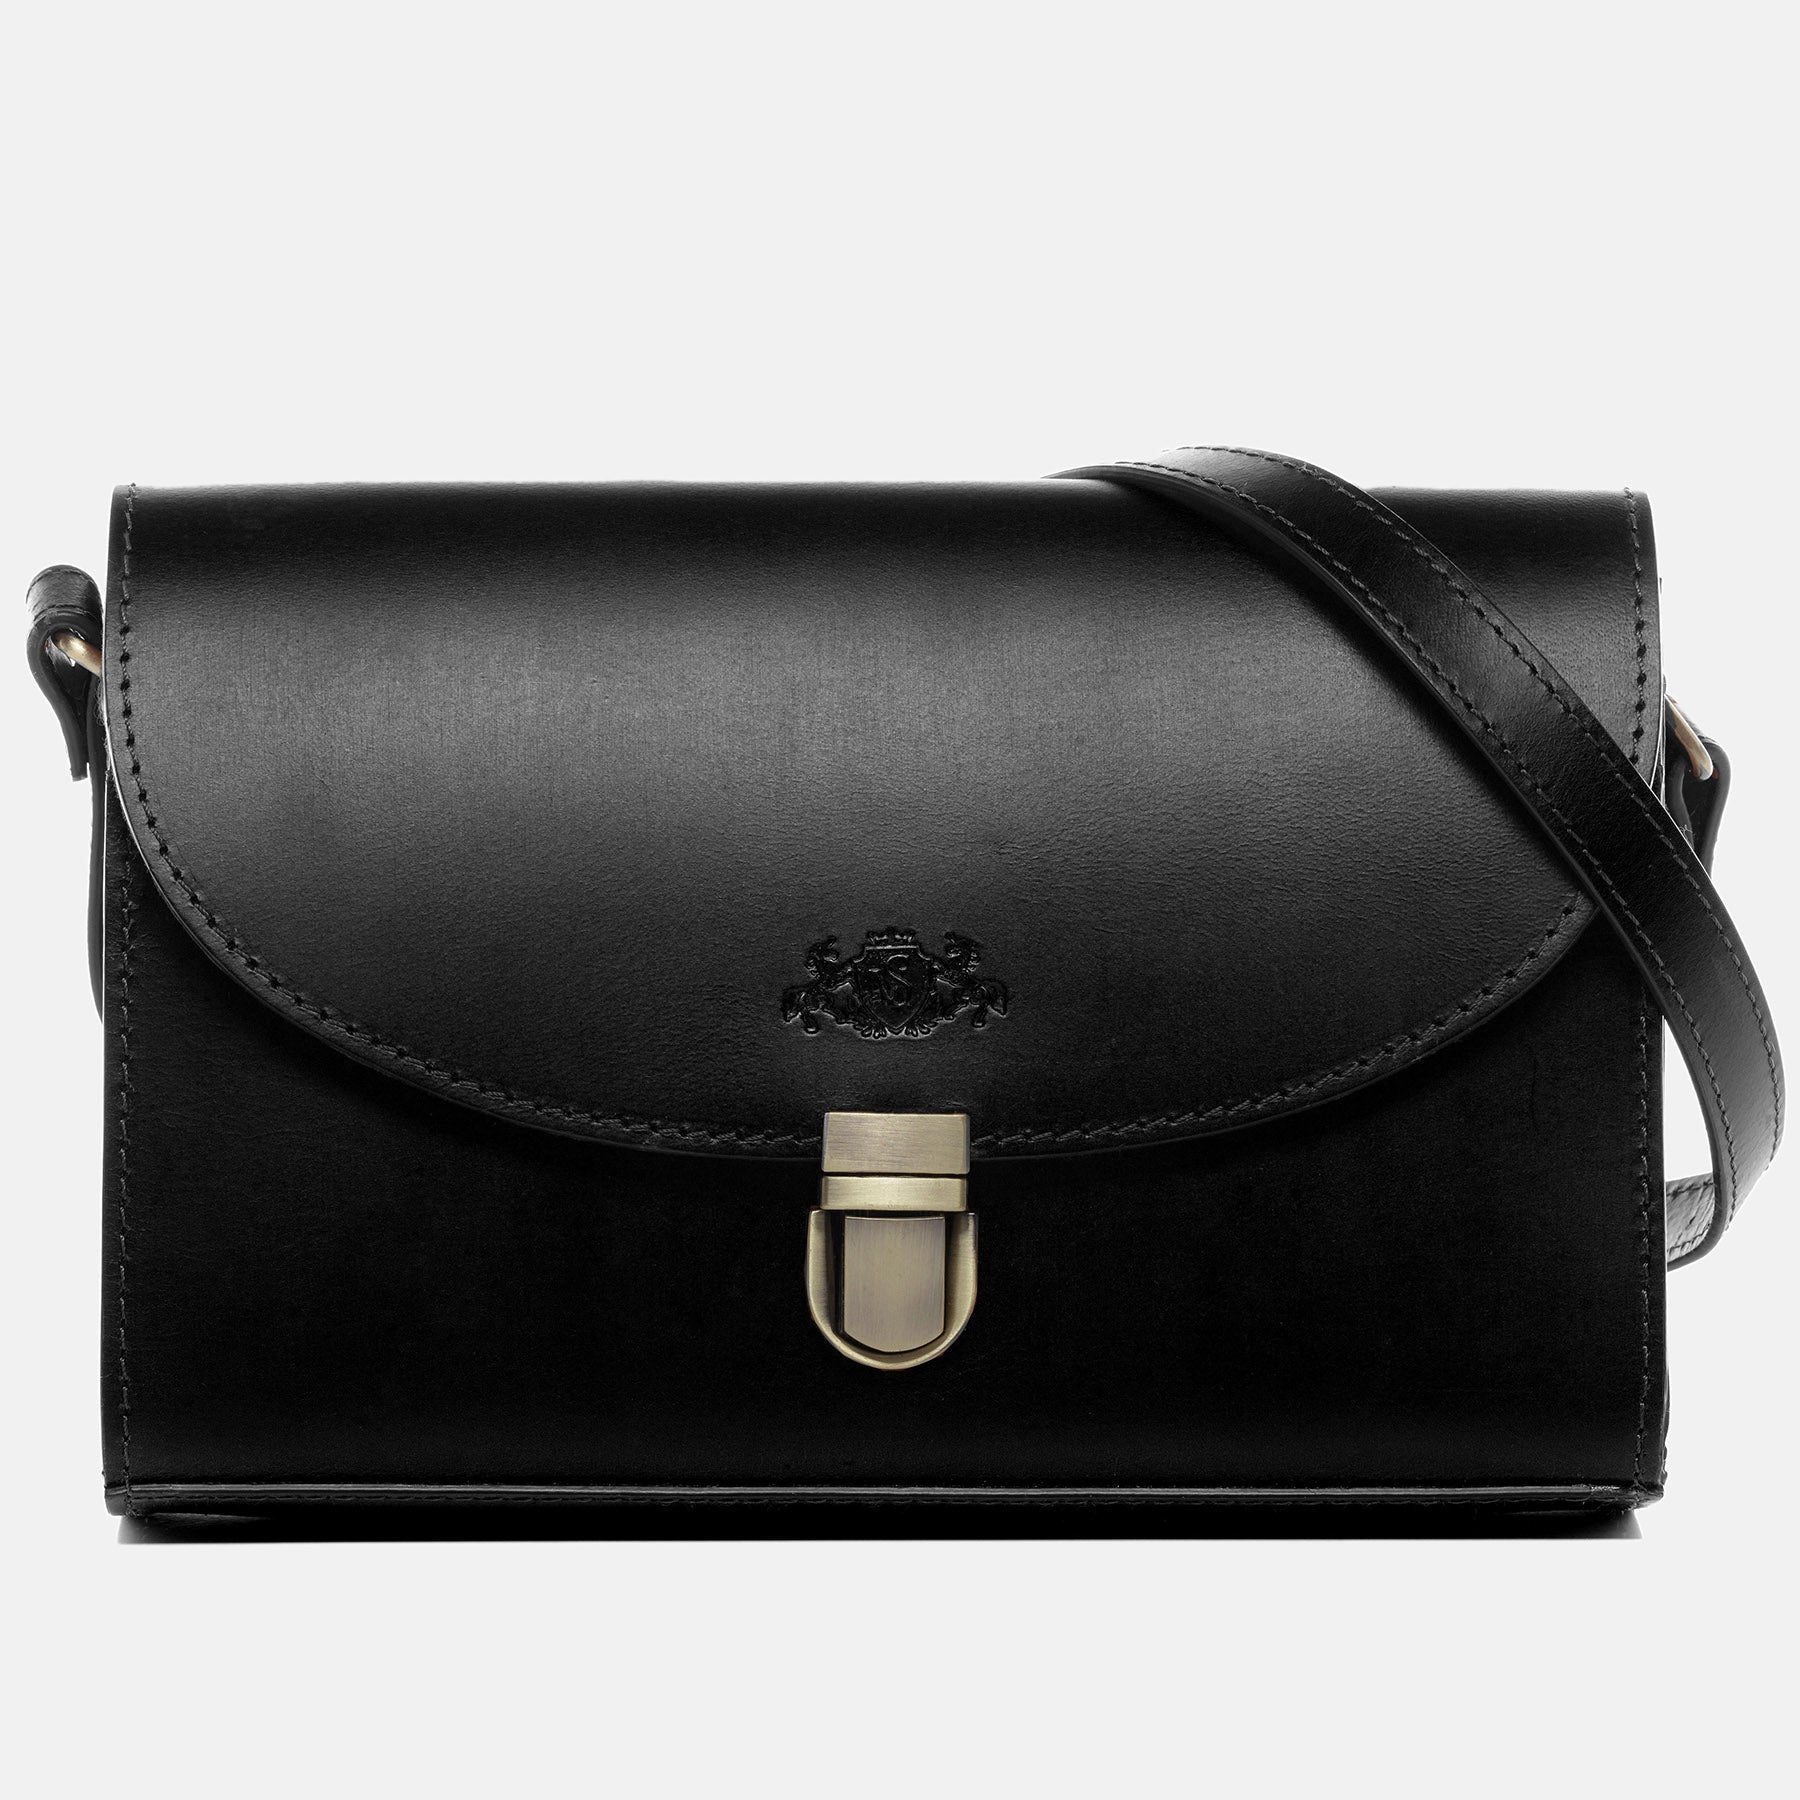 Shoulder bag ADELE saddle leather black